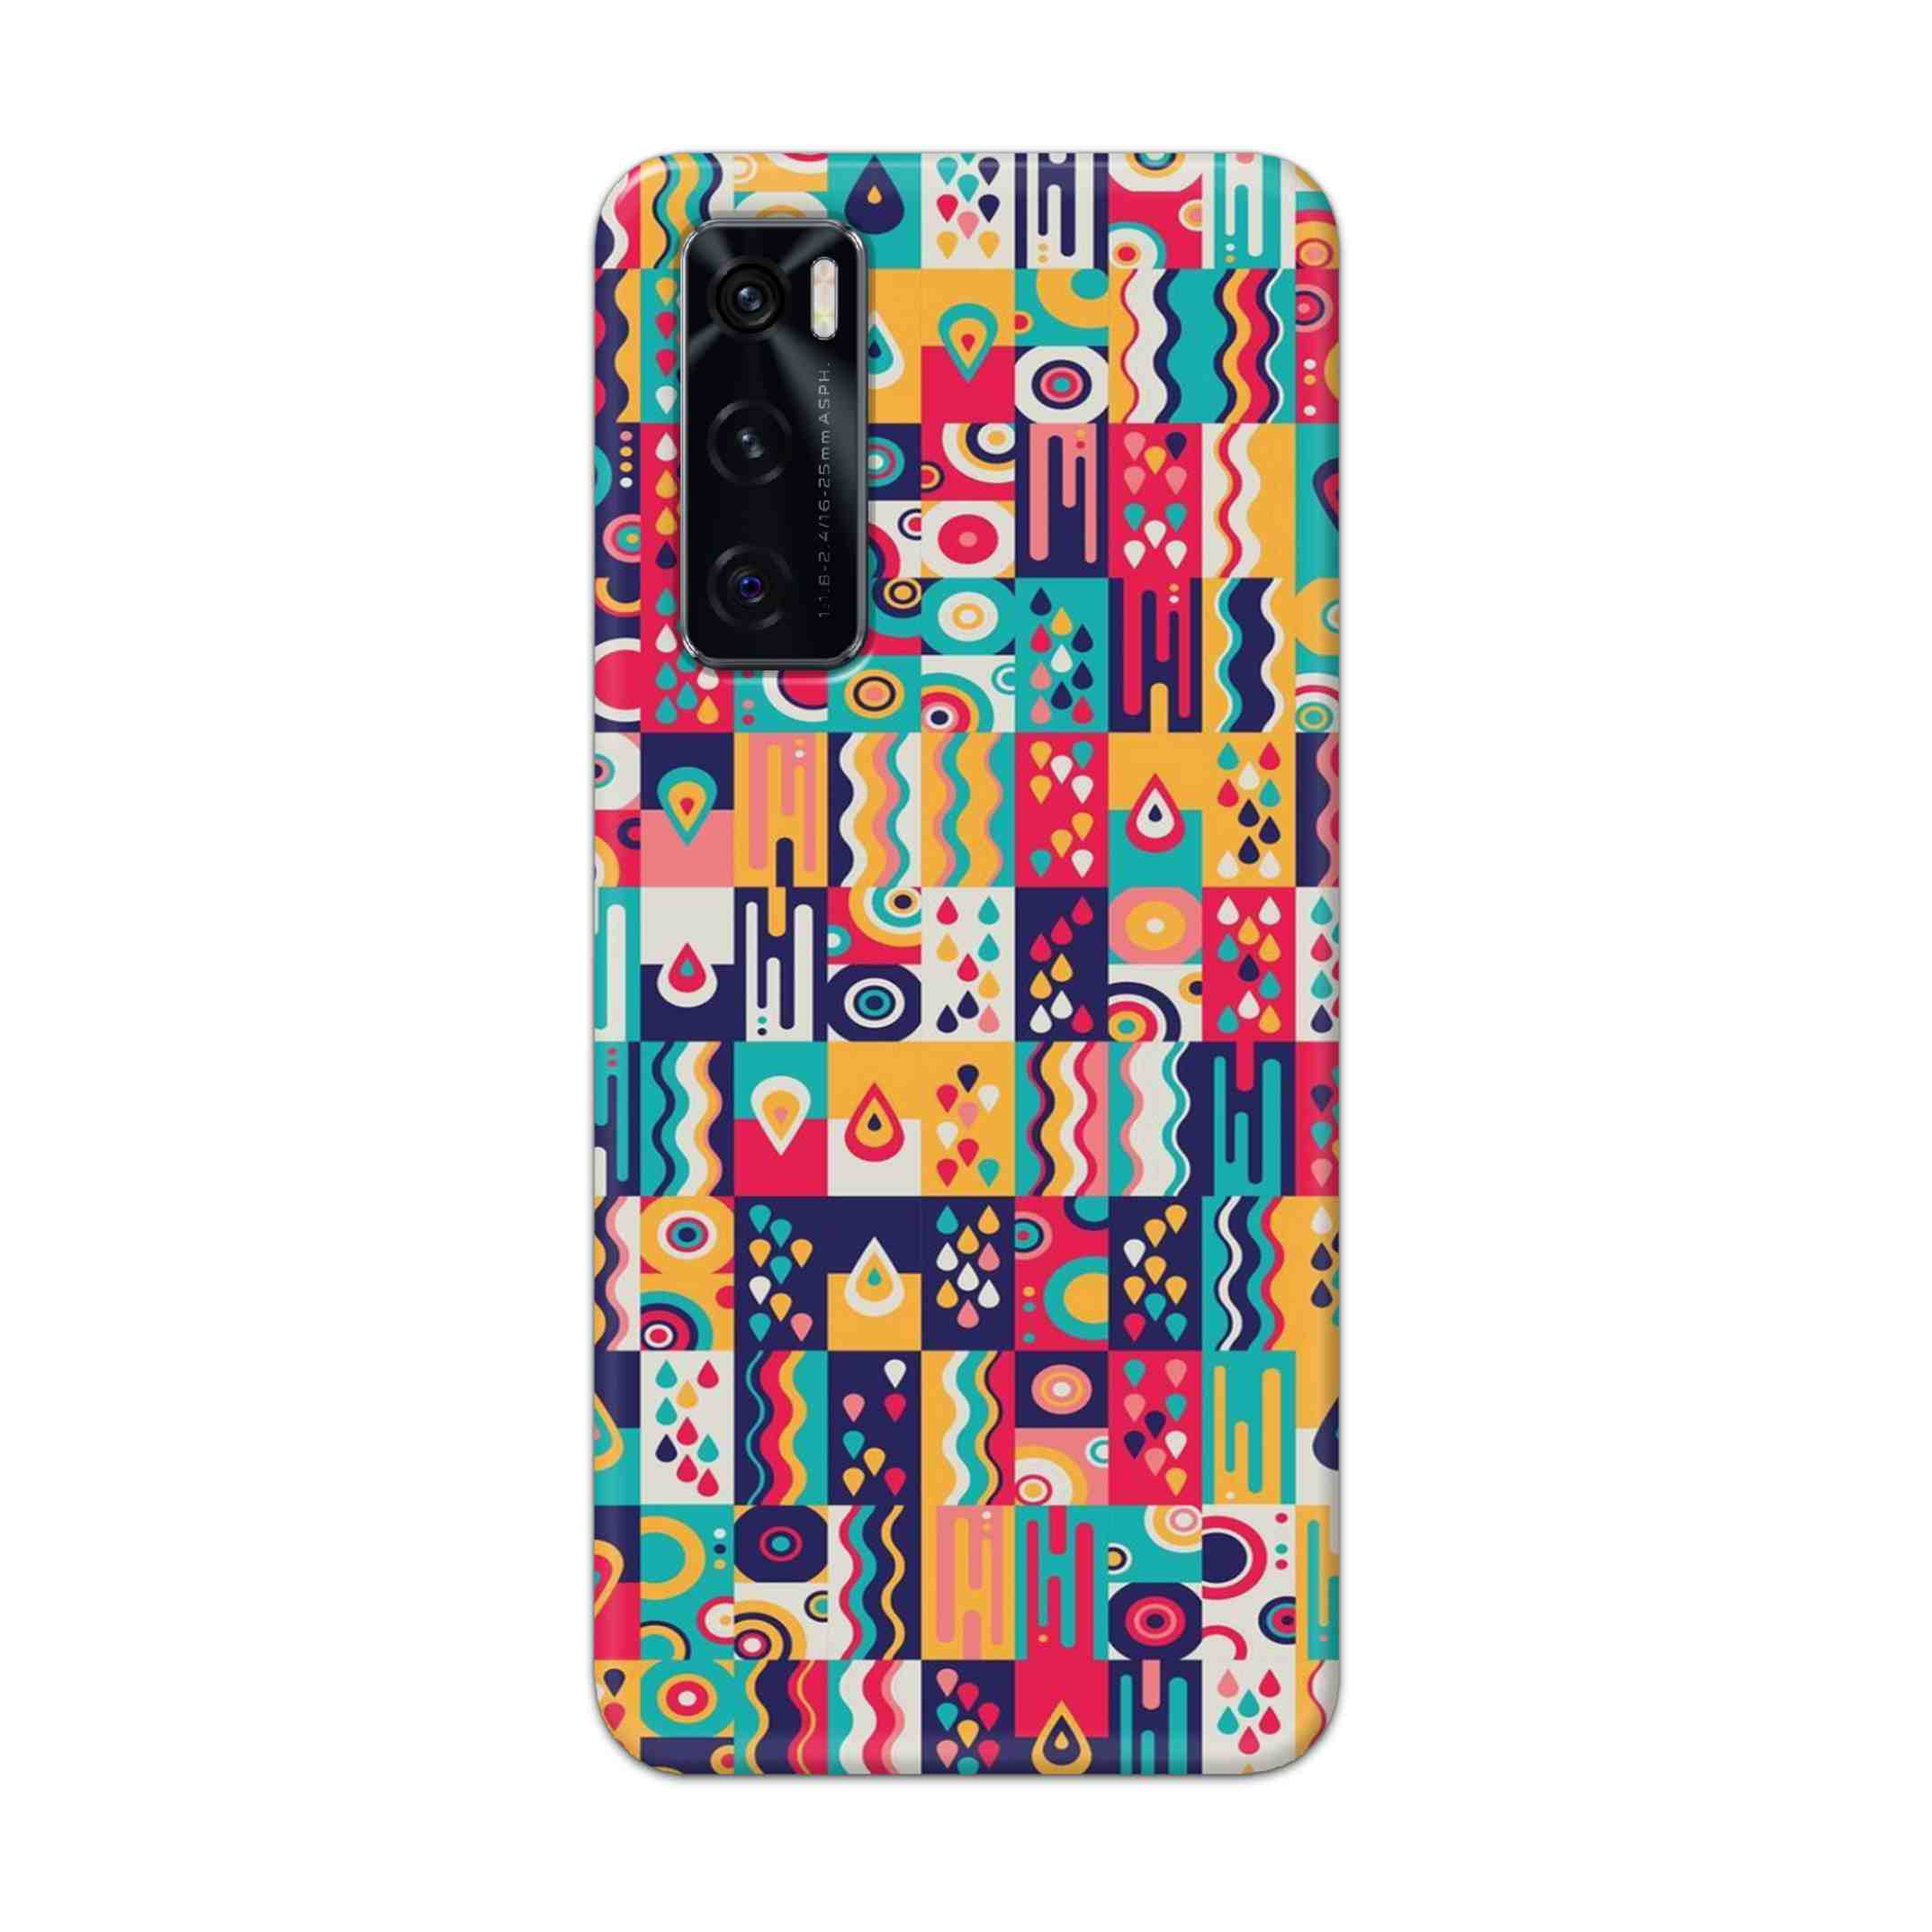 Buy Art Hard Back Mobile Phone Case Cover For Vivo V20 SE Online